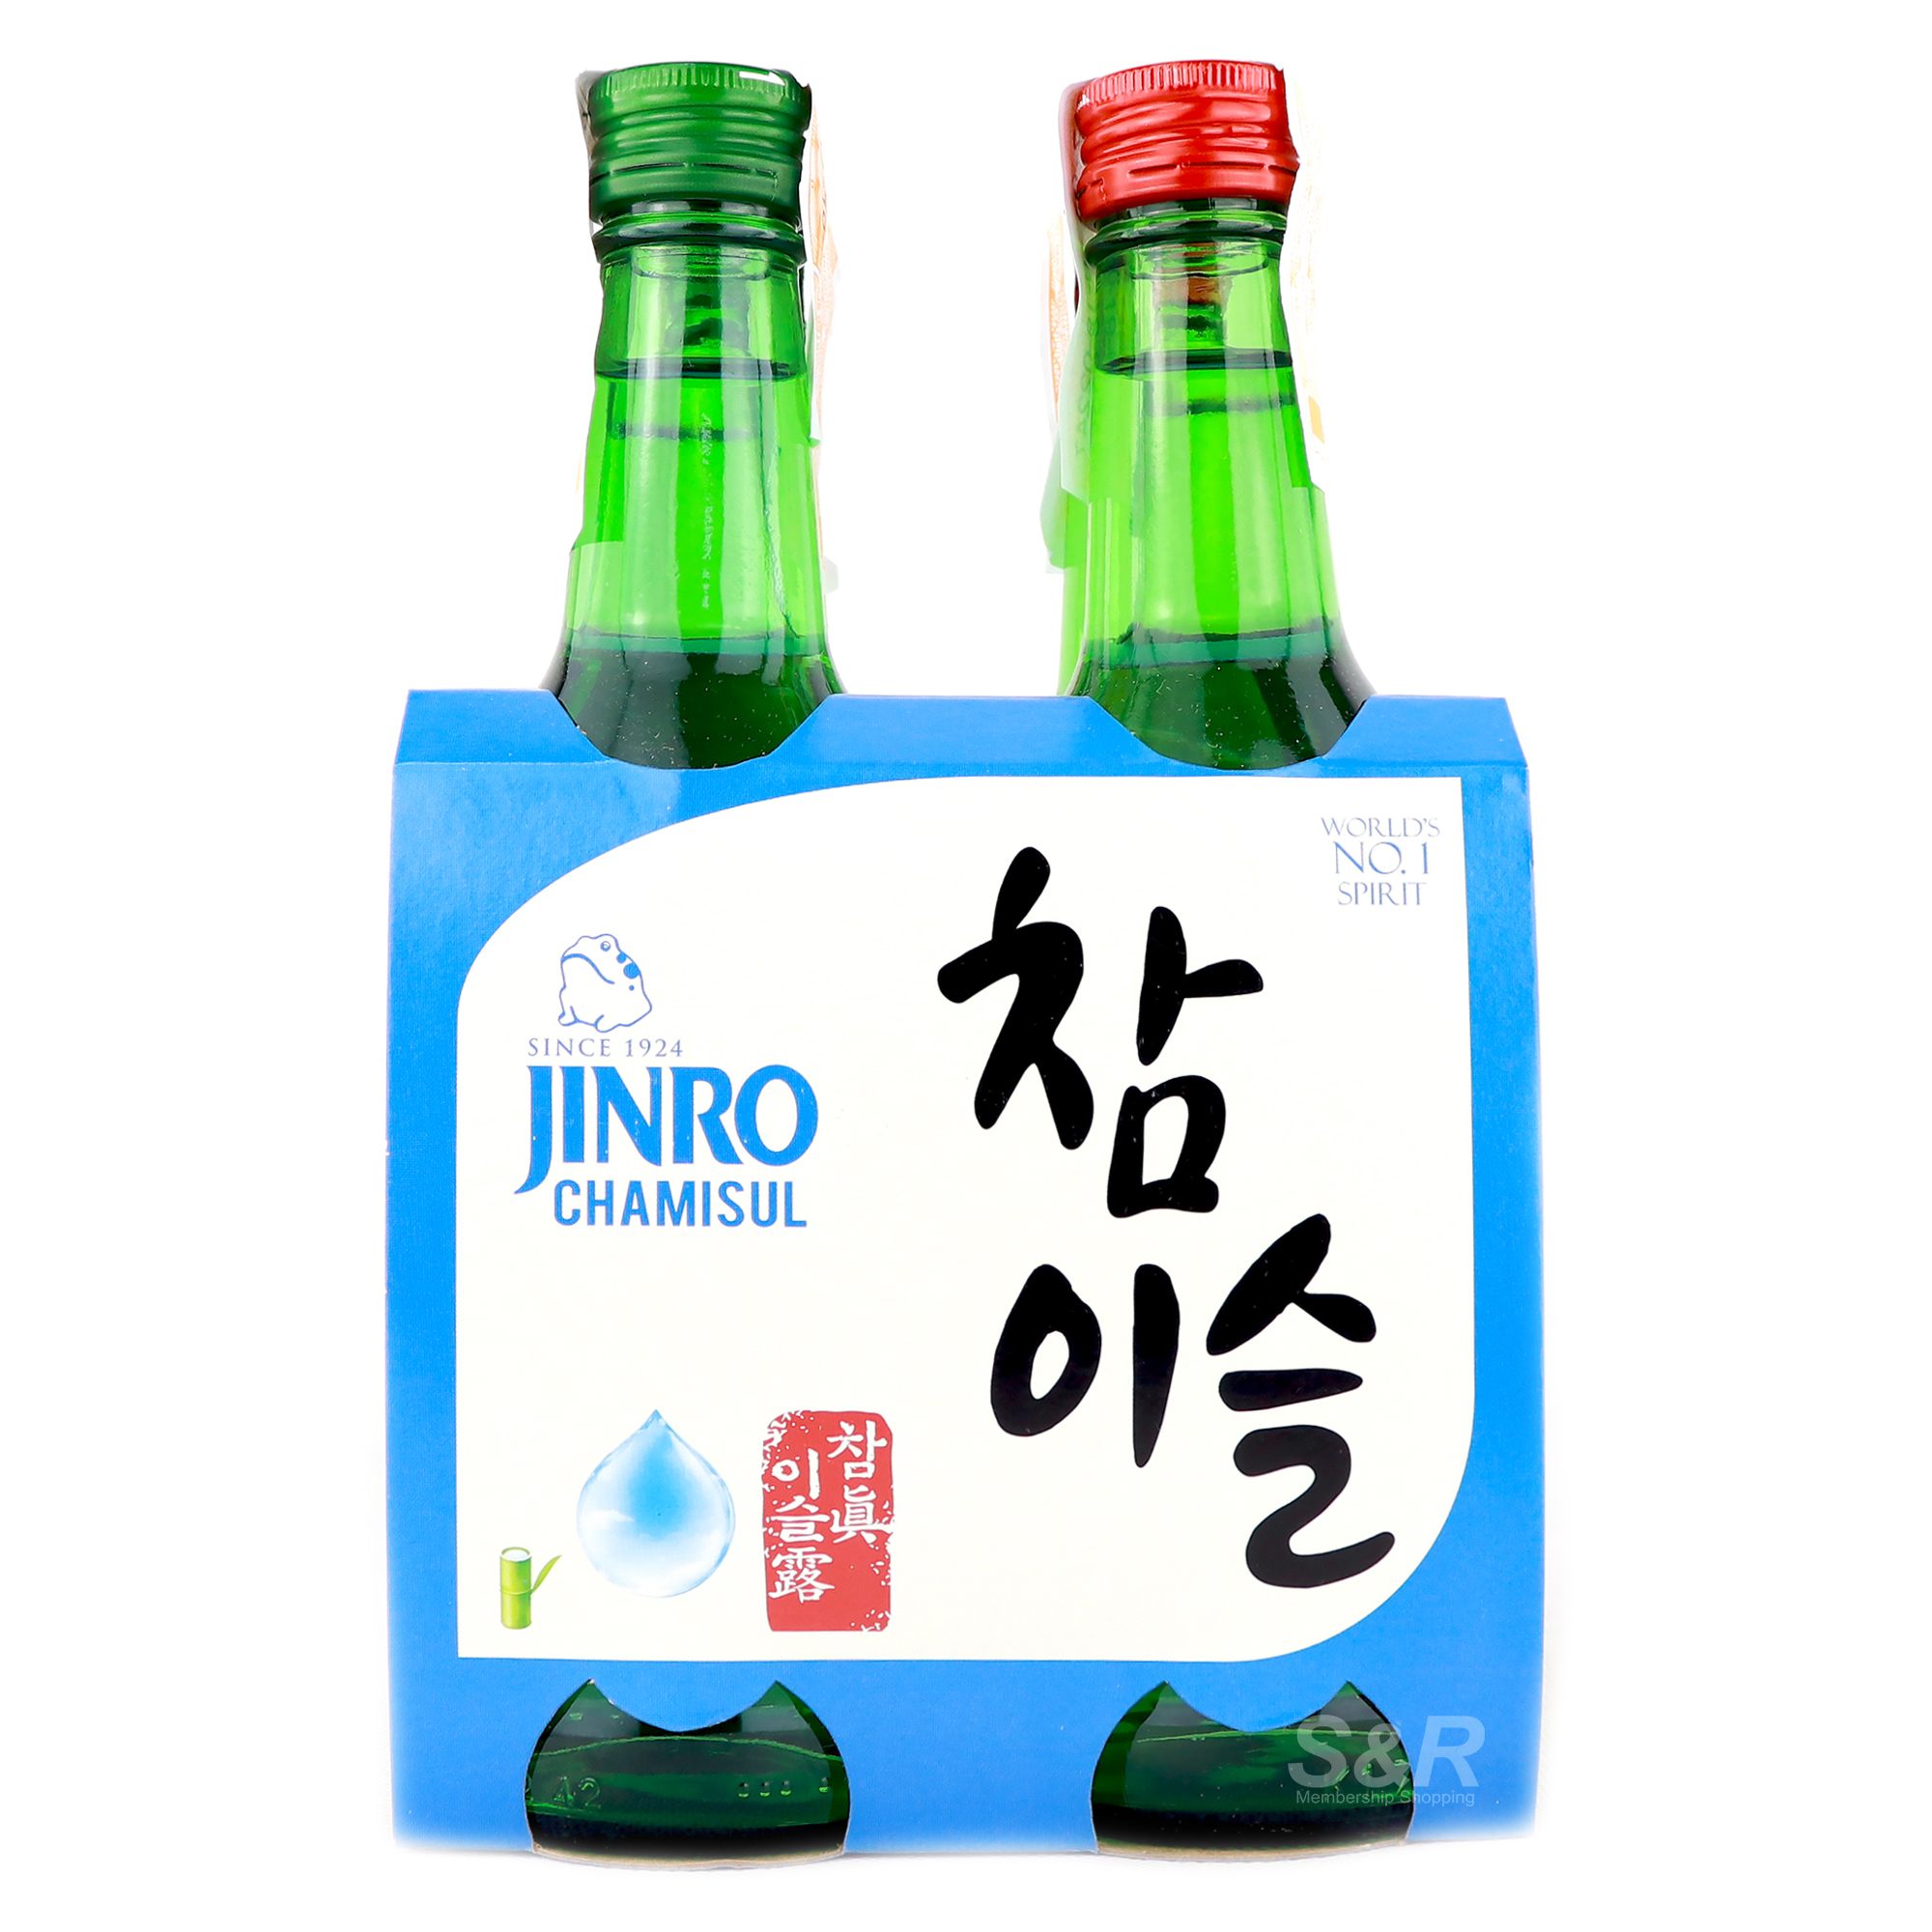 Jinro Chamisul Soju 4 bottles